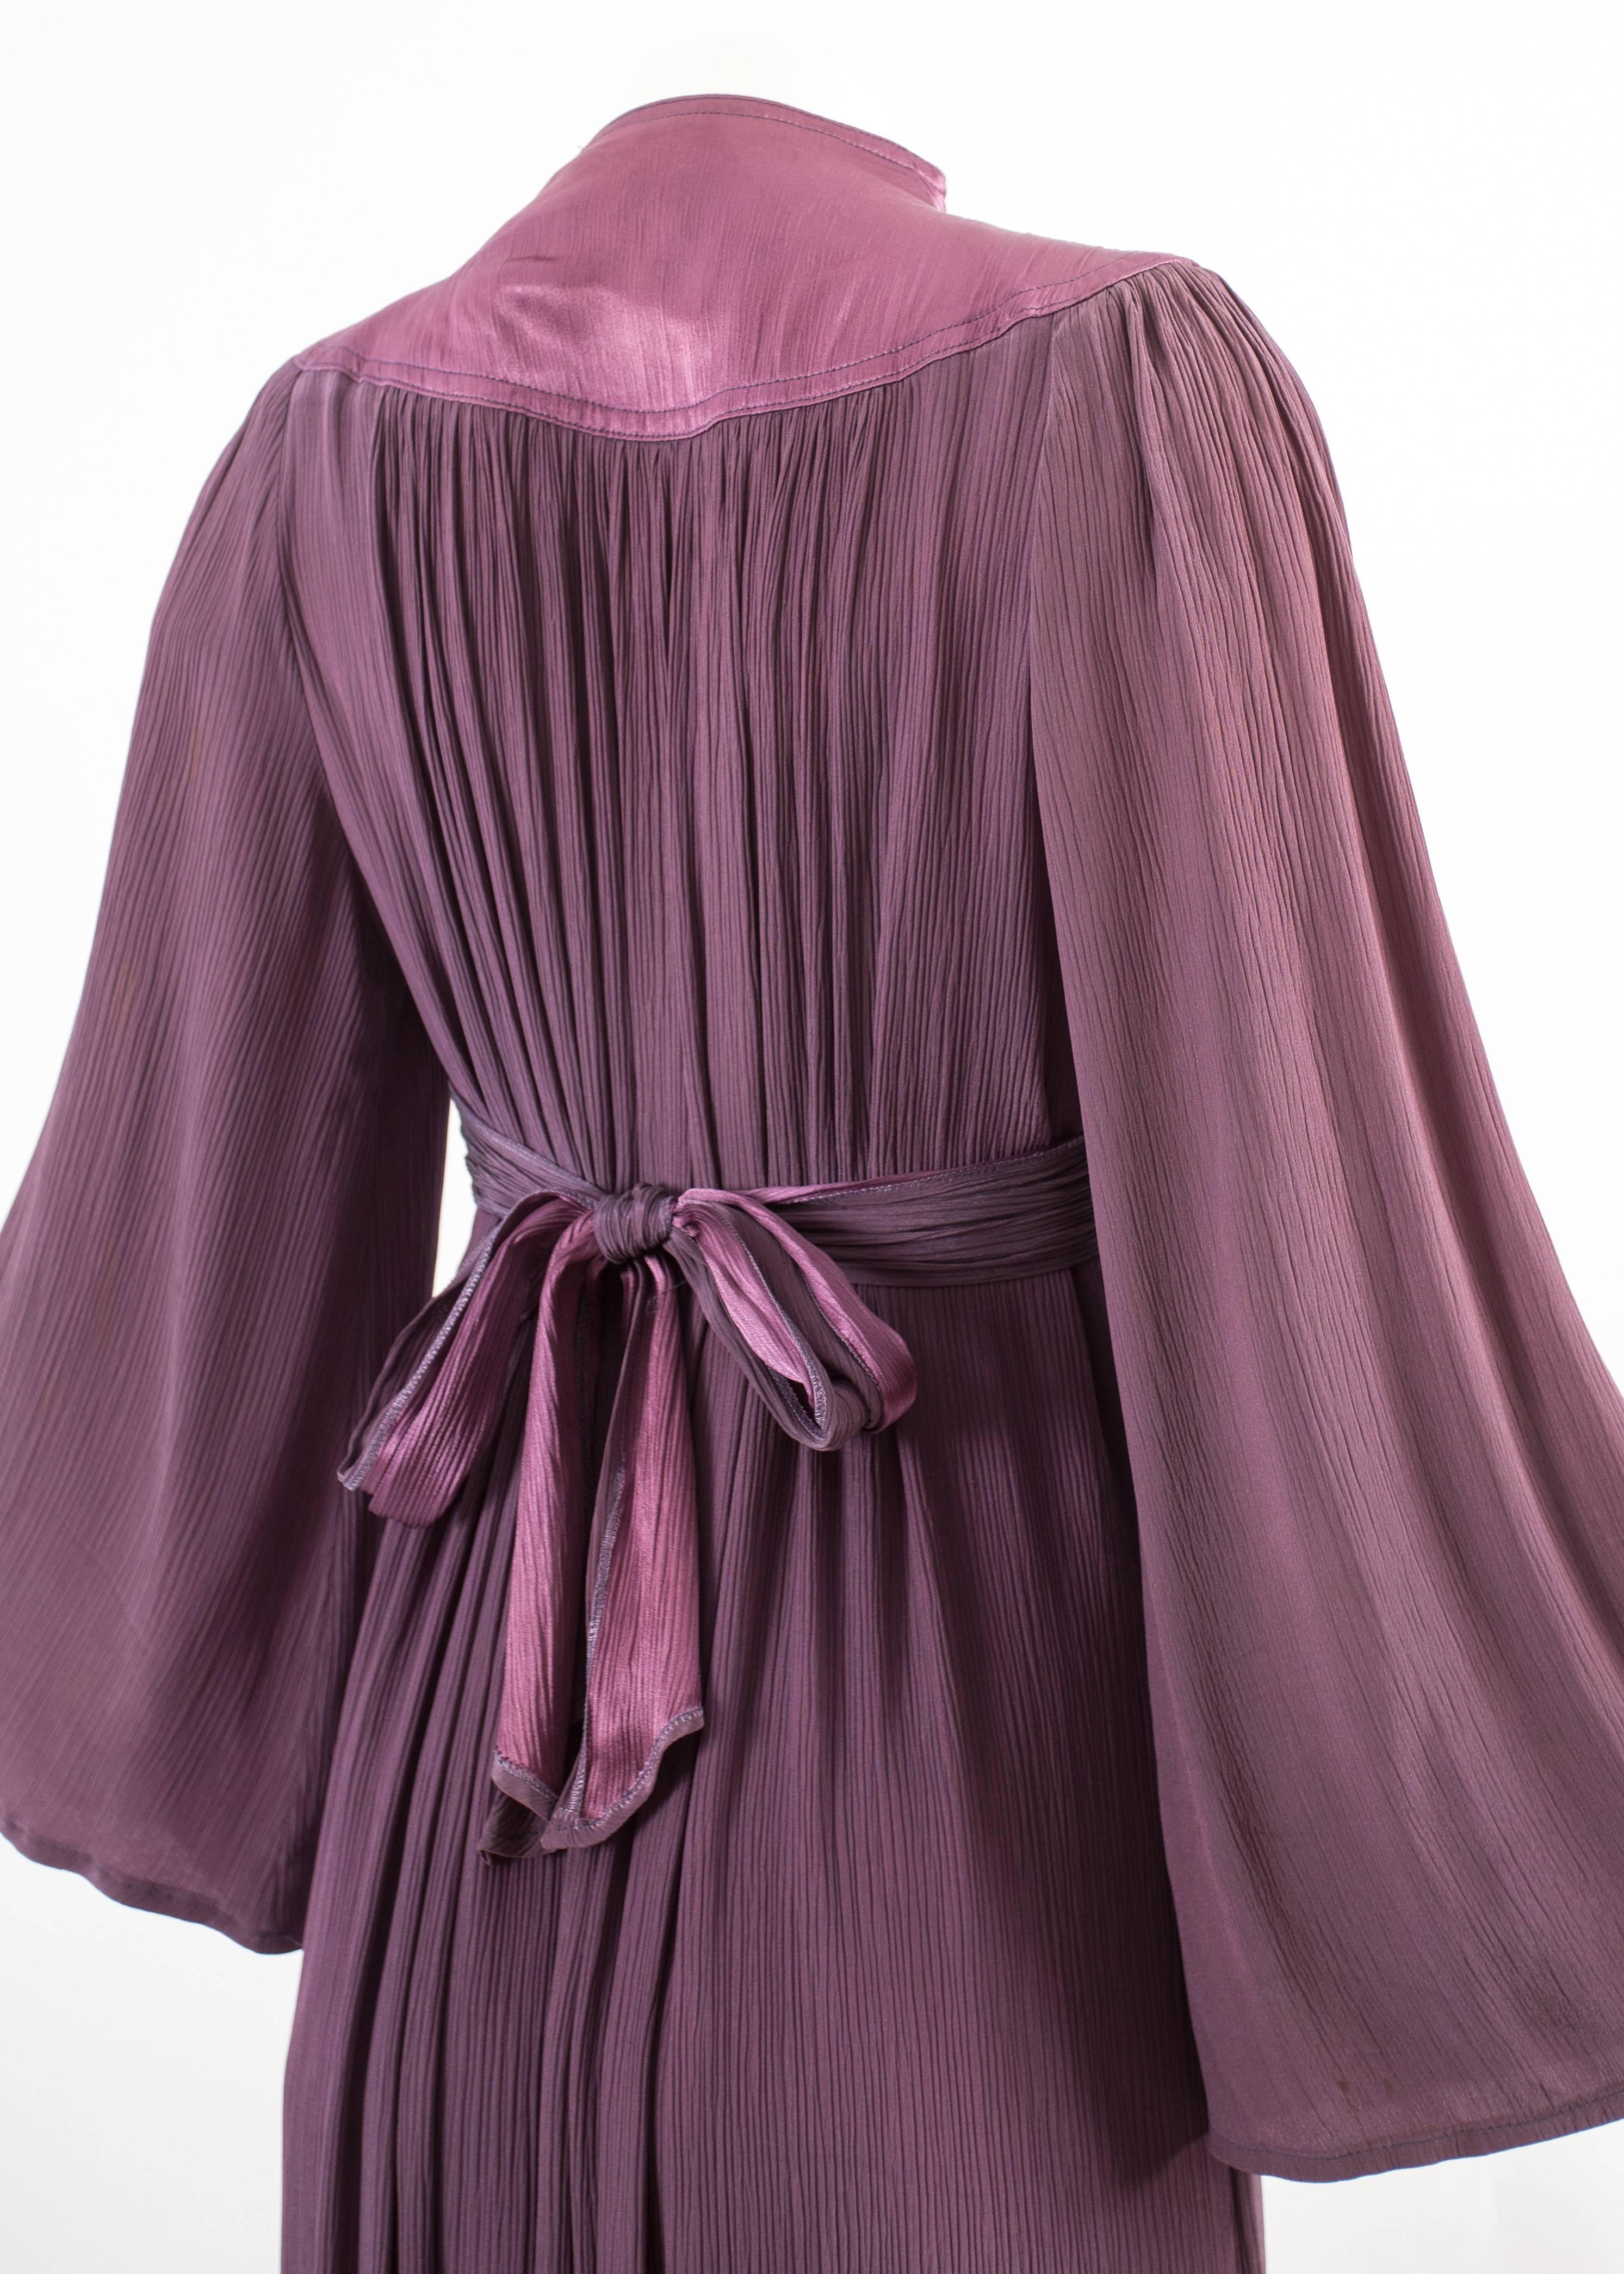 Women's Ossie Clark 1970 pleated purple evening dress